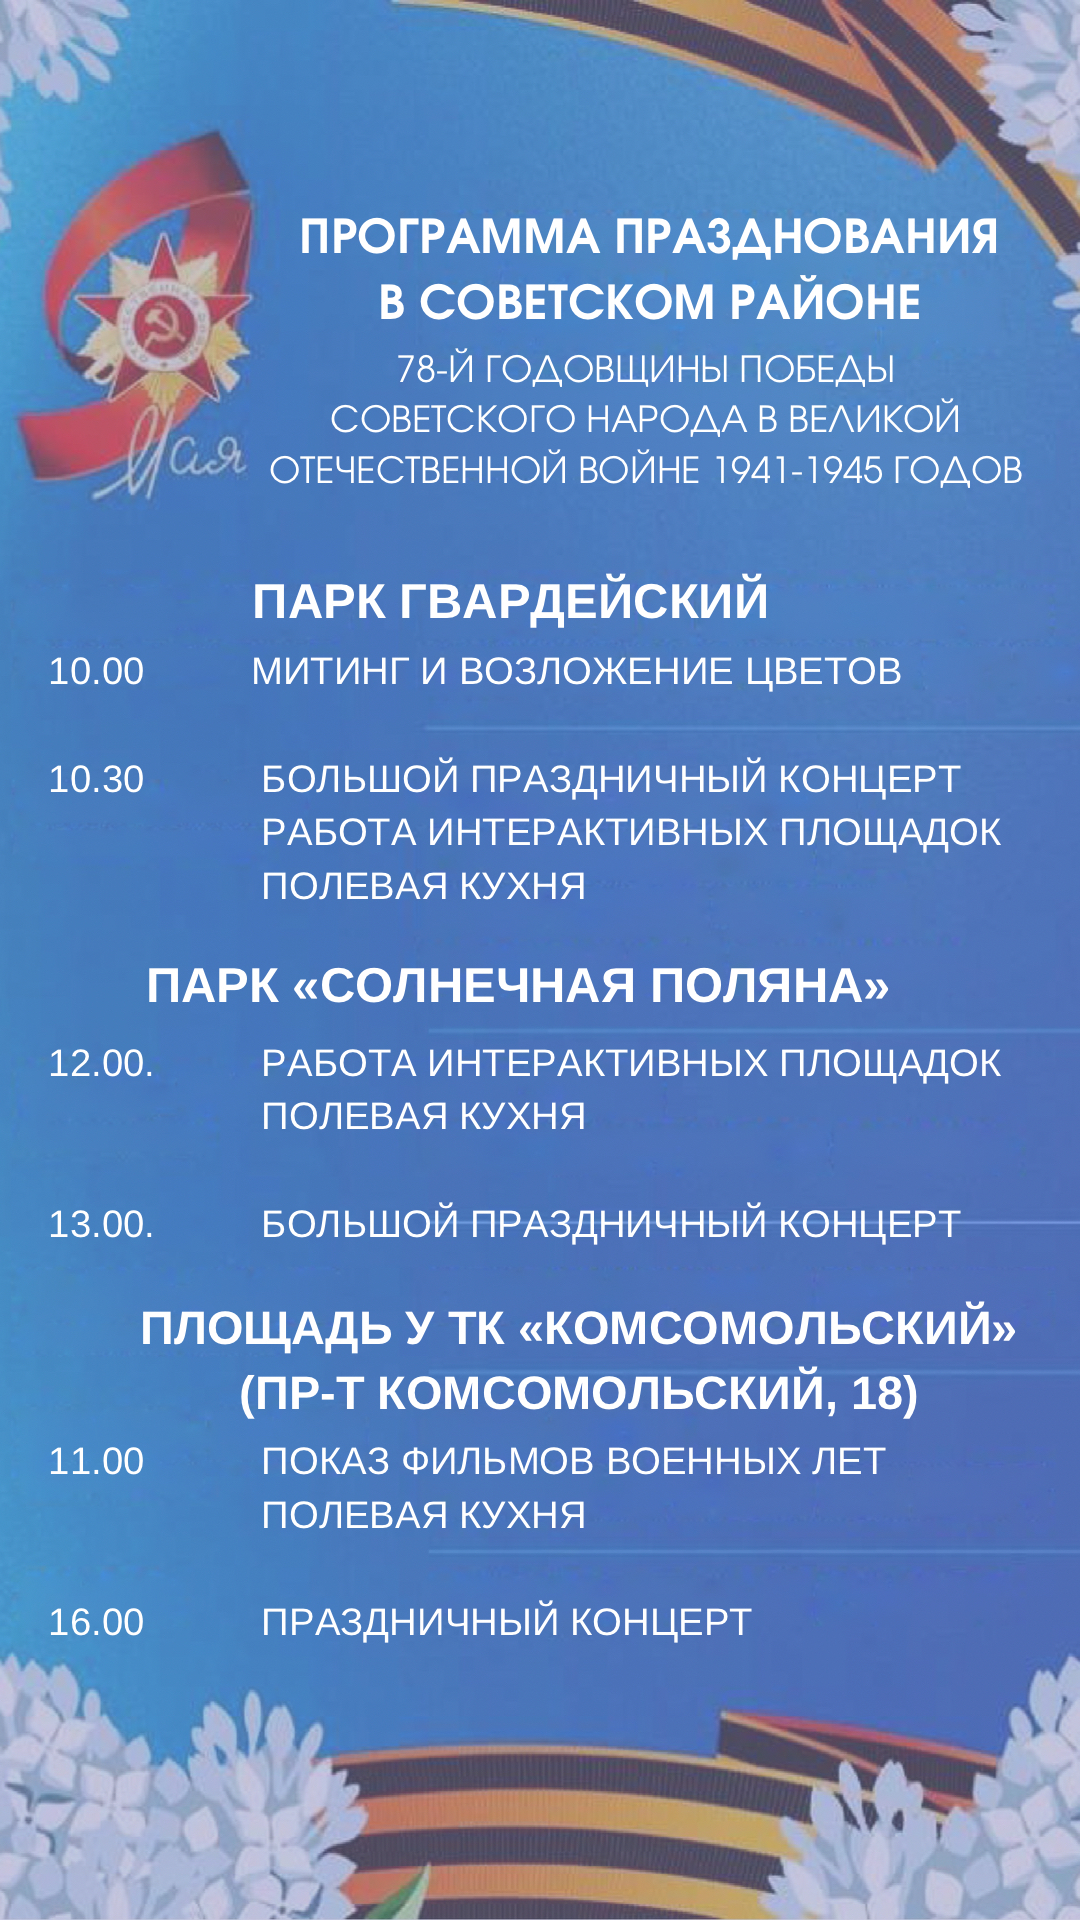 Программа празднования в Советском районе 78-й годовщины Победы советского народа в Великой Отечественной Войне 1941-1945 годов.